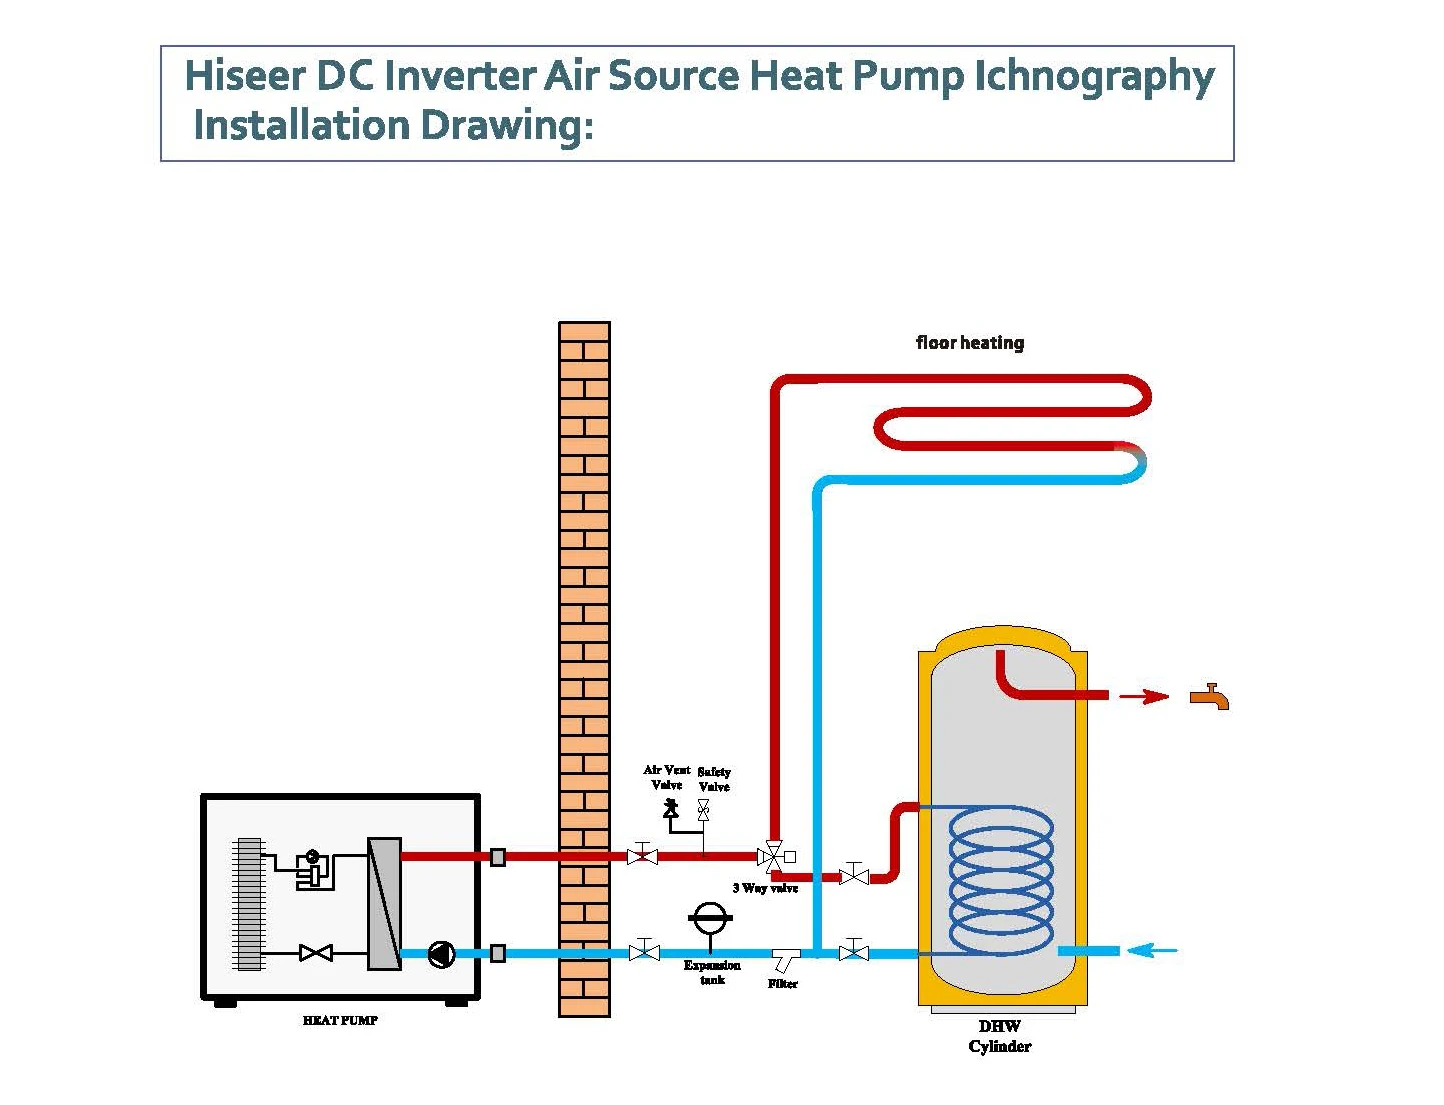 Воздушный насос воздух вода. Схема подключения теплового насоса воздух вода. Схема подключения теплового насоса воздух воздух. Тепловые насосы воздух-воздух принципиальные схемы. Тепловой насос воздух-вода схема монтажа.